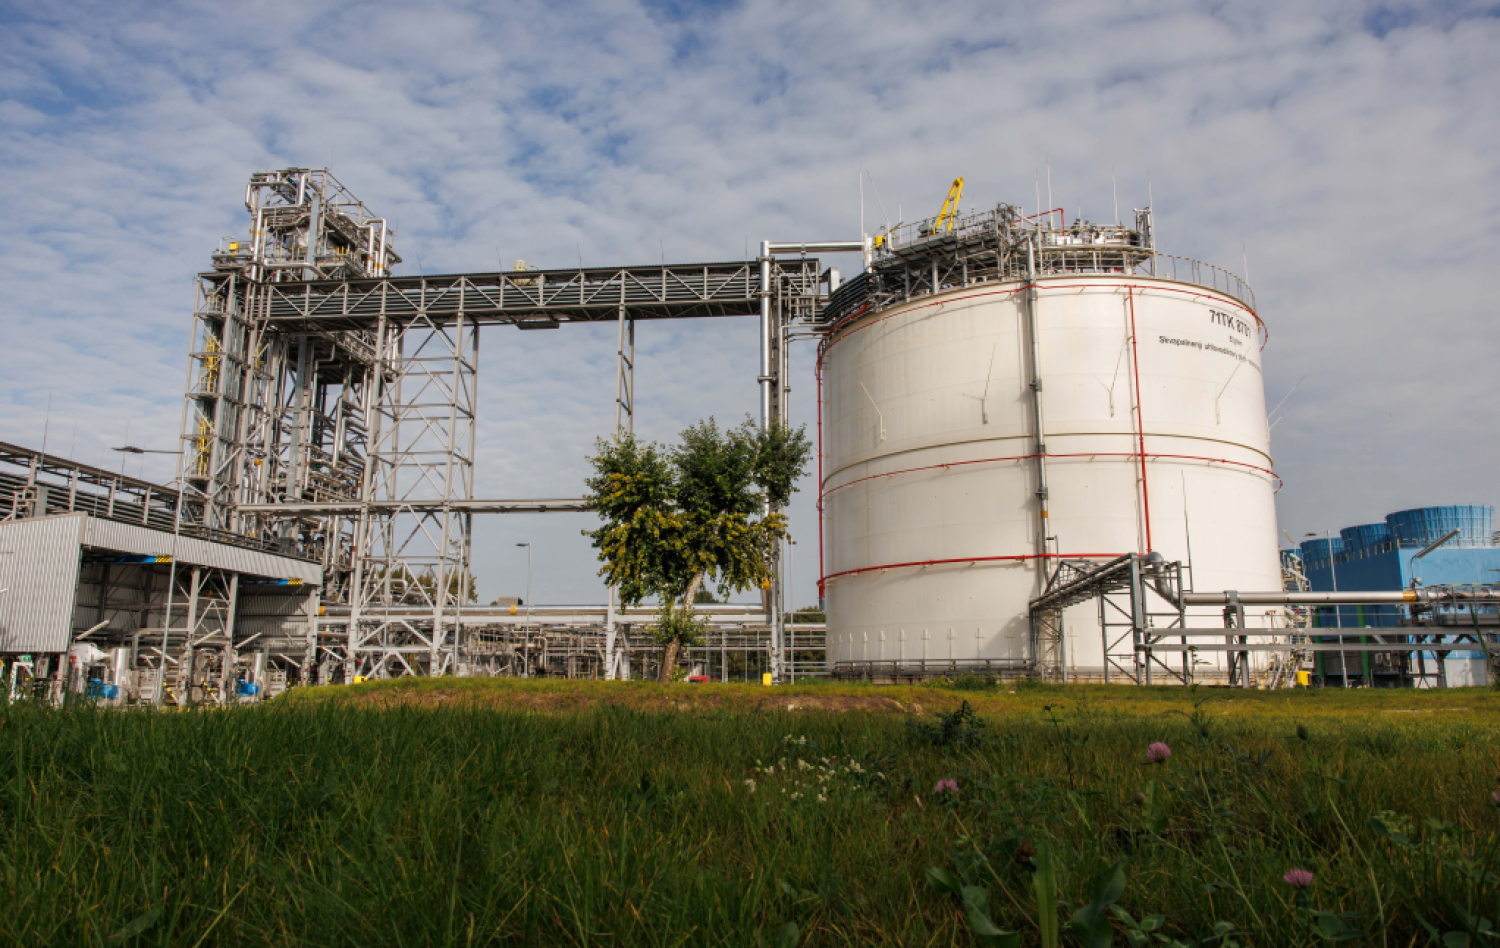 Slovnaft: The new ethylene tank will cut regular flaring in half